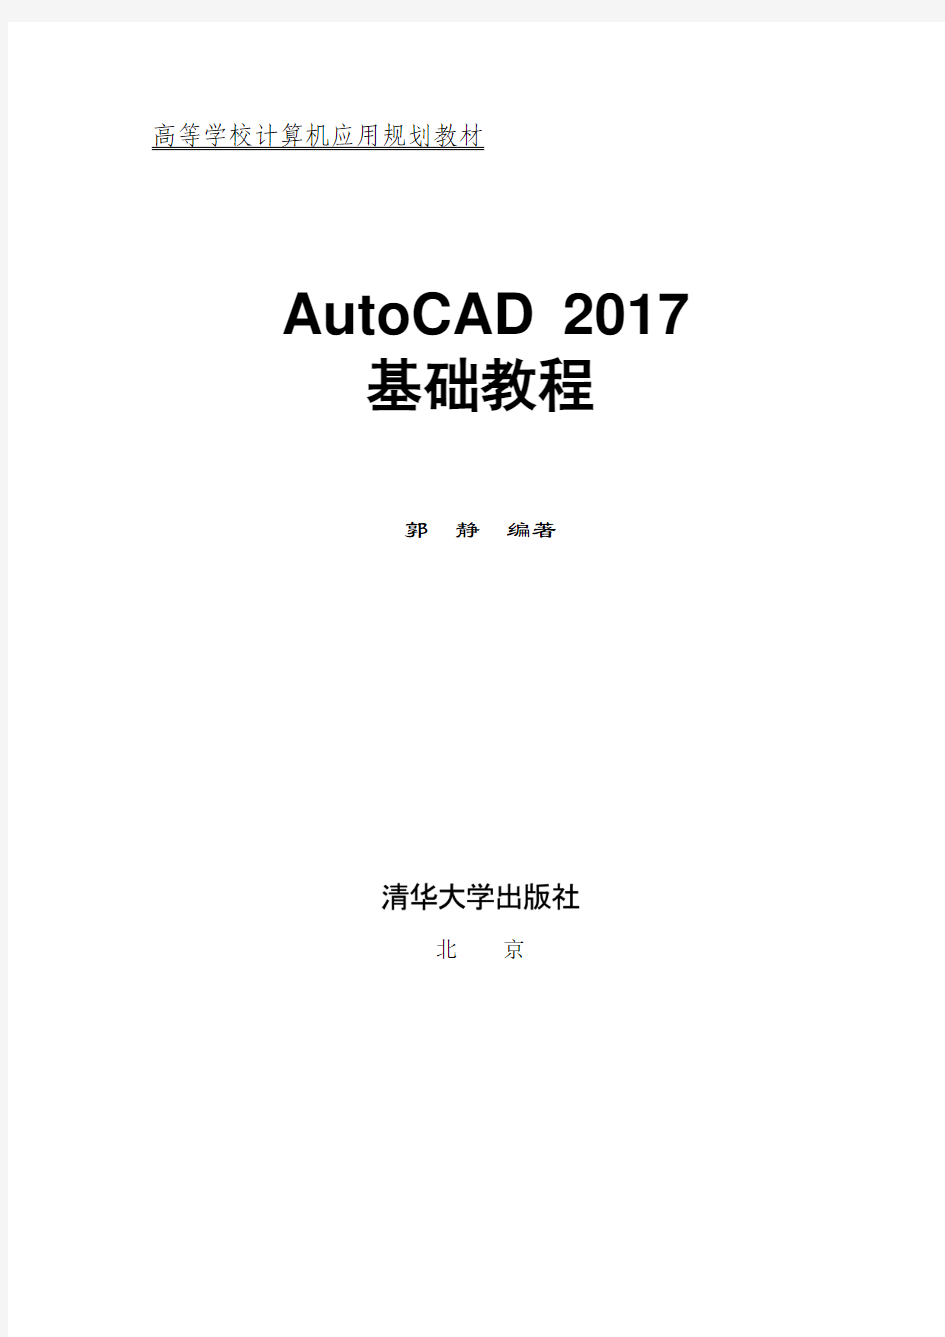 AutoCAD 2017基础教程